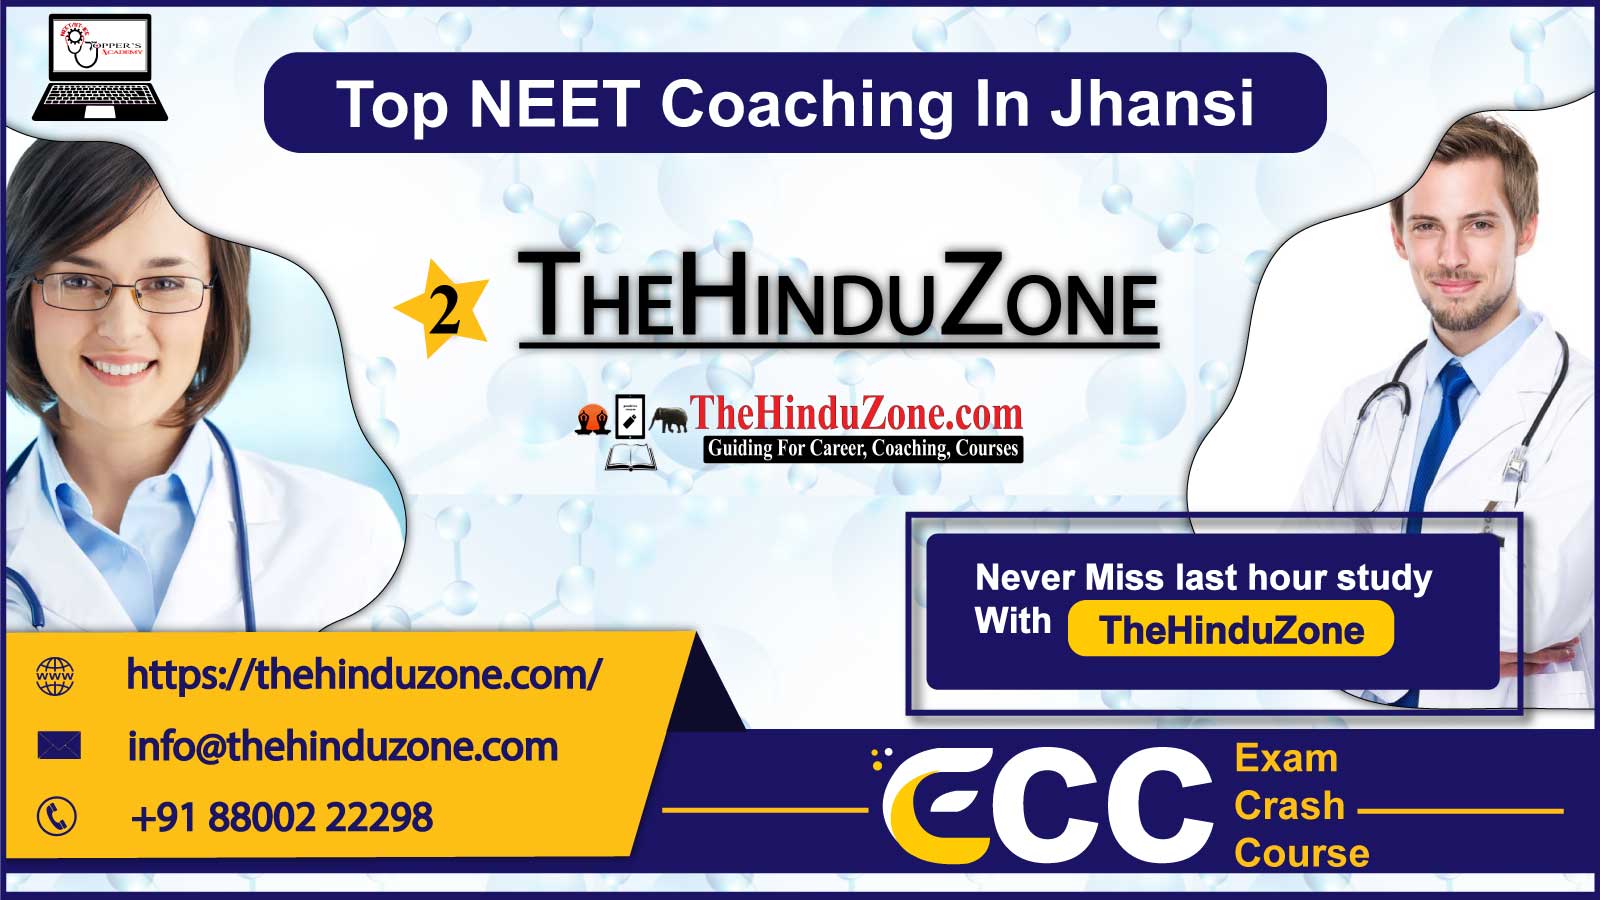 The Hinduzone NEET Coaching in Jhansi